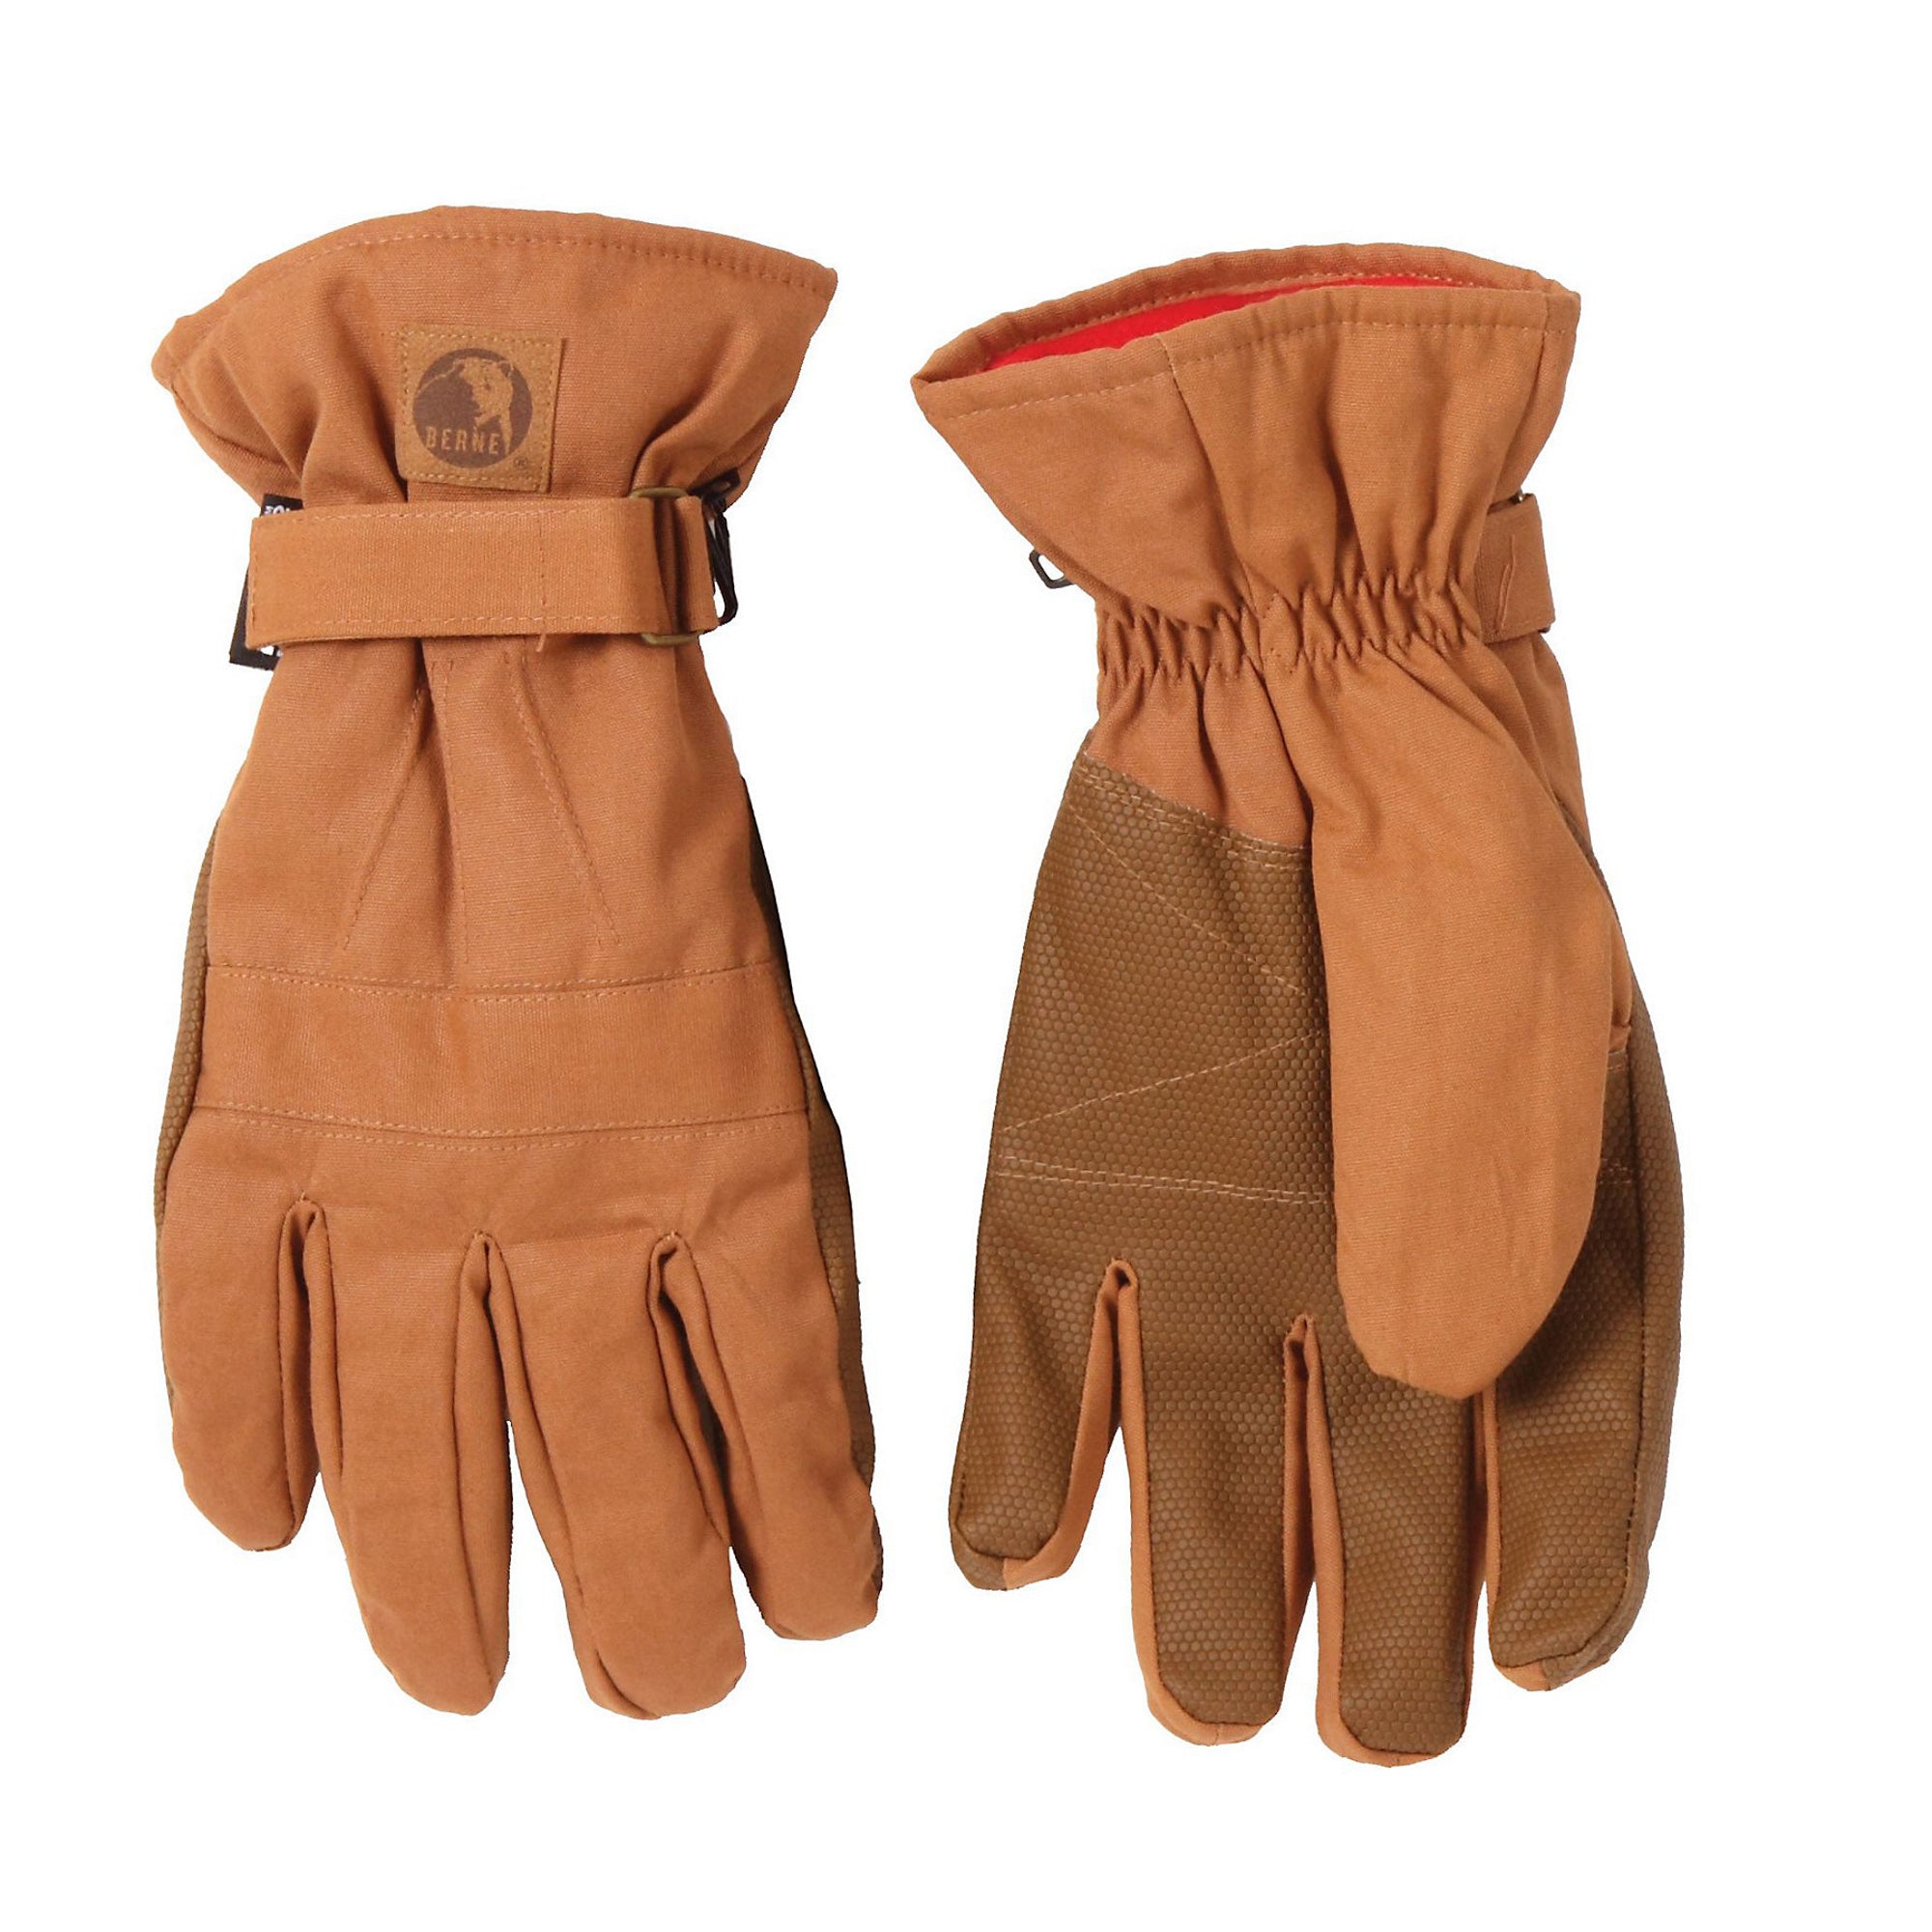 mens cotton work gloves